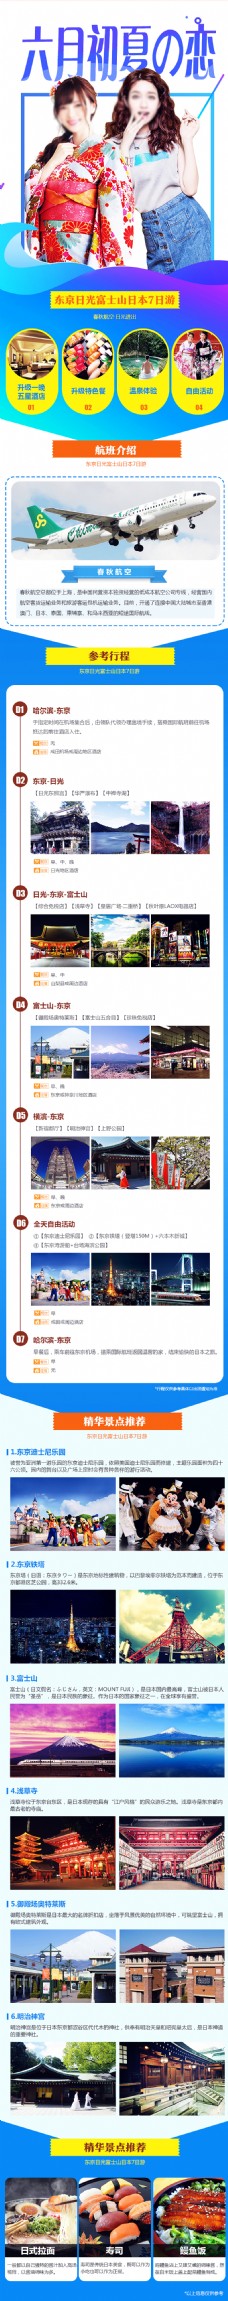 日本旅游海报东京大阪迪士尼详情页